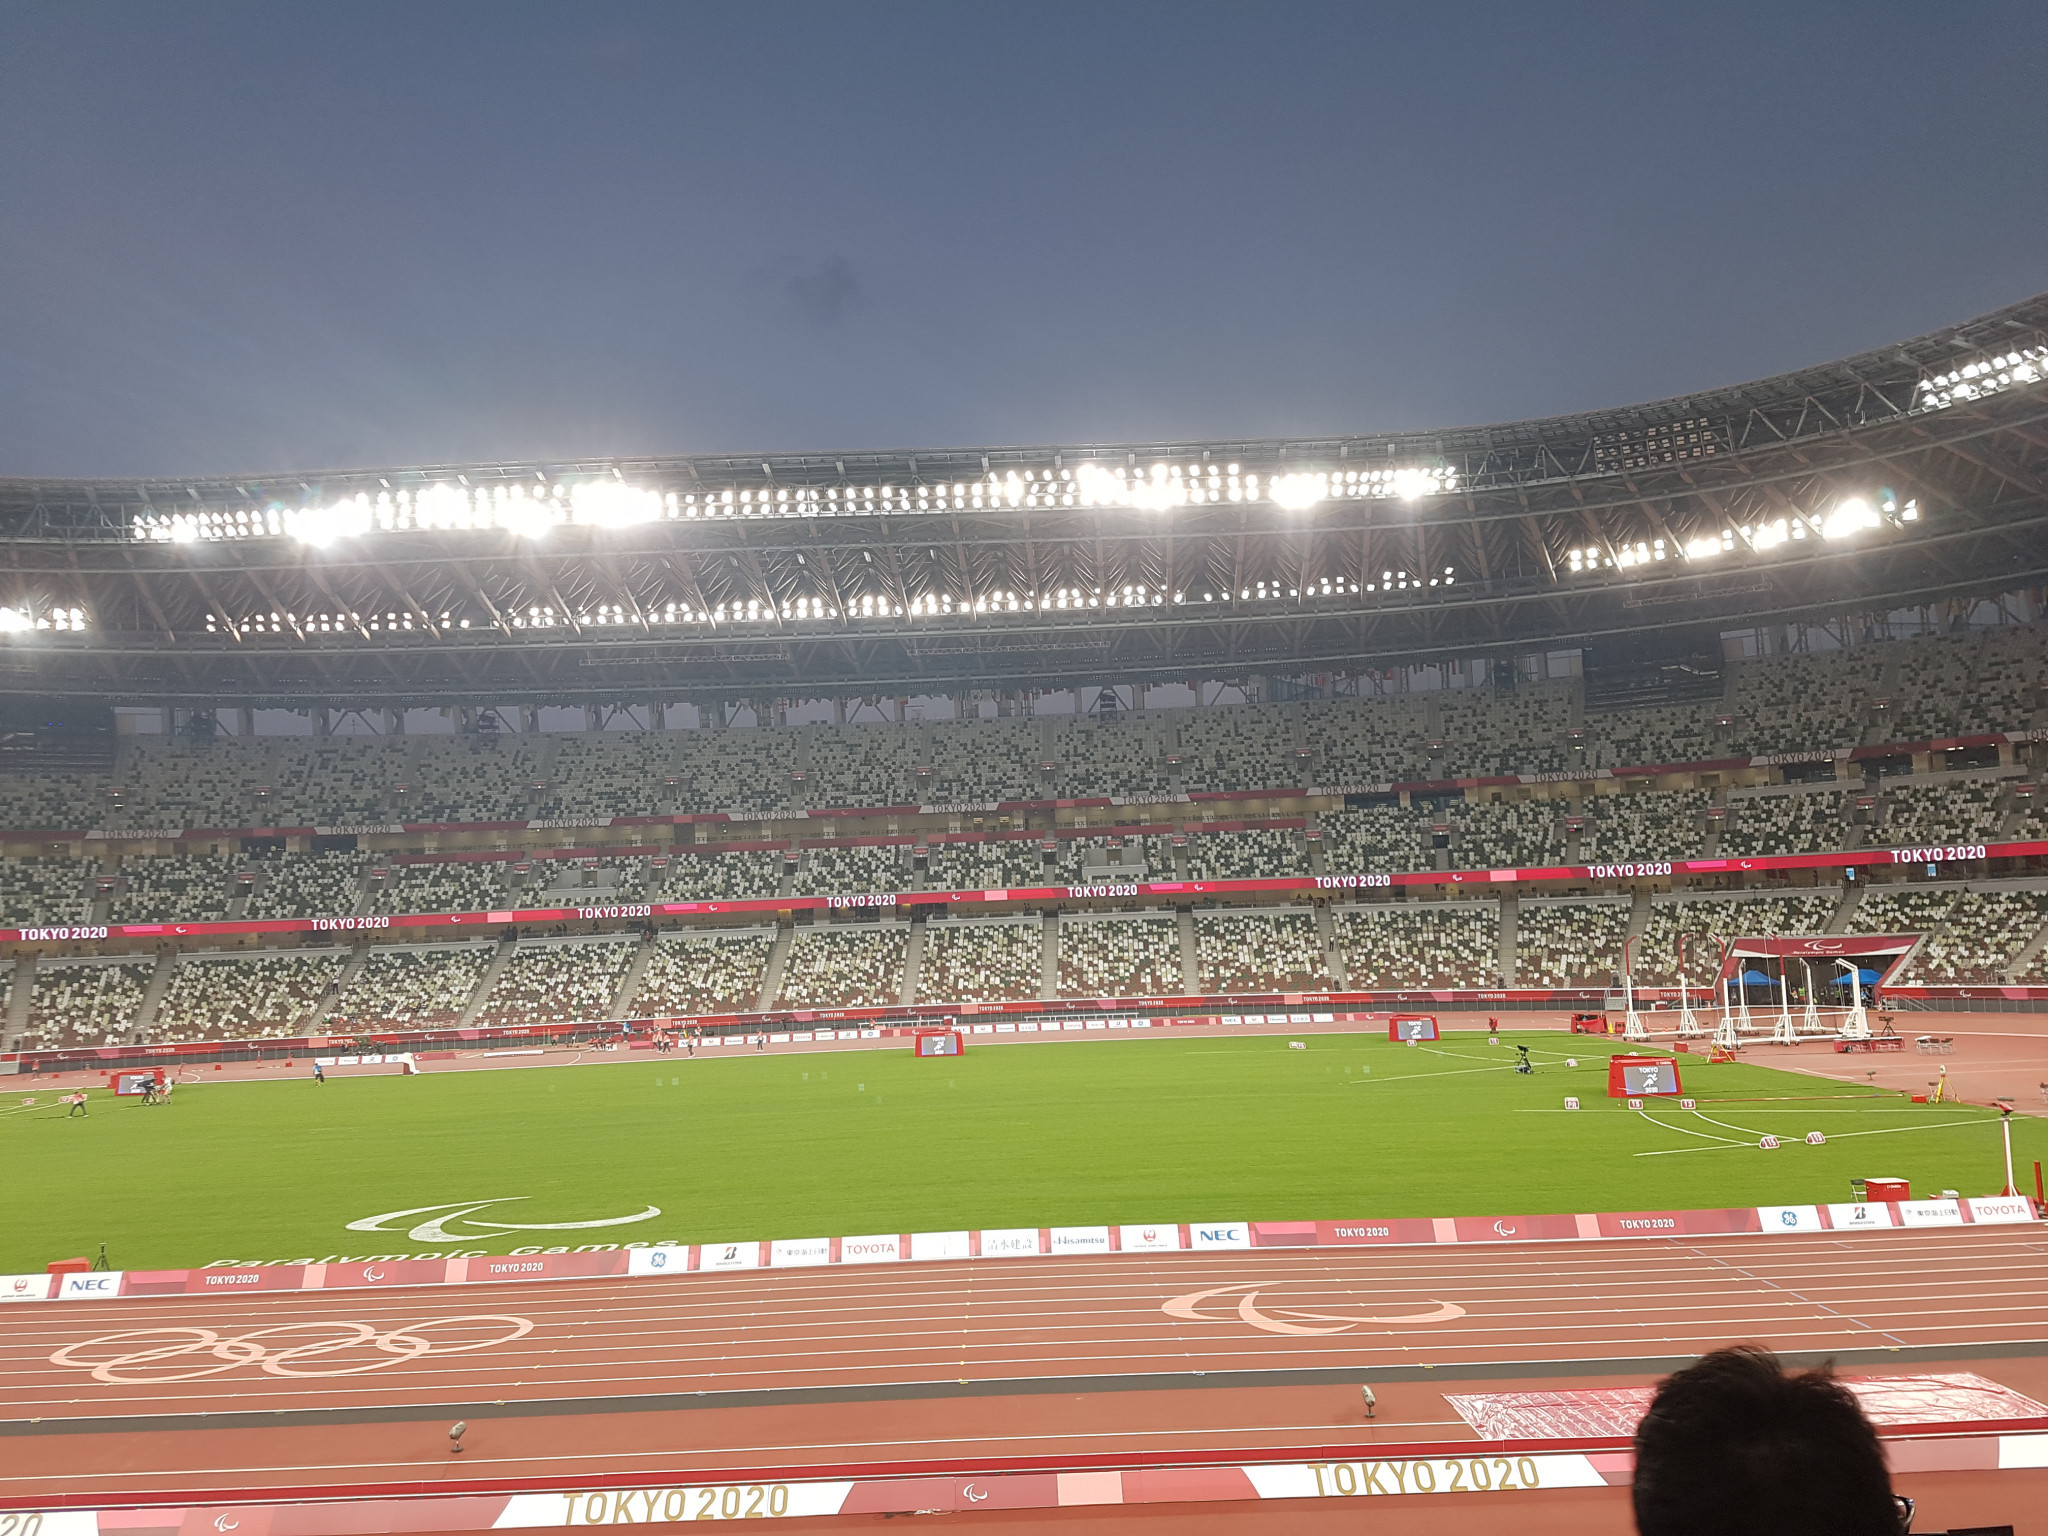 Le cerimonie di apertura e chiusura delle Olimpiadi e Paralimpiadi di Tokyo 2020 si sono svolte allo Stadio Nazionale ©ITG